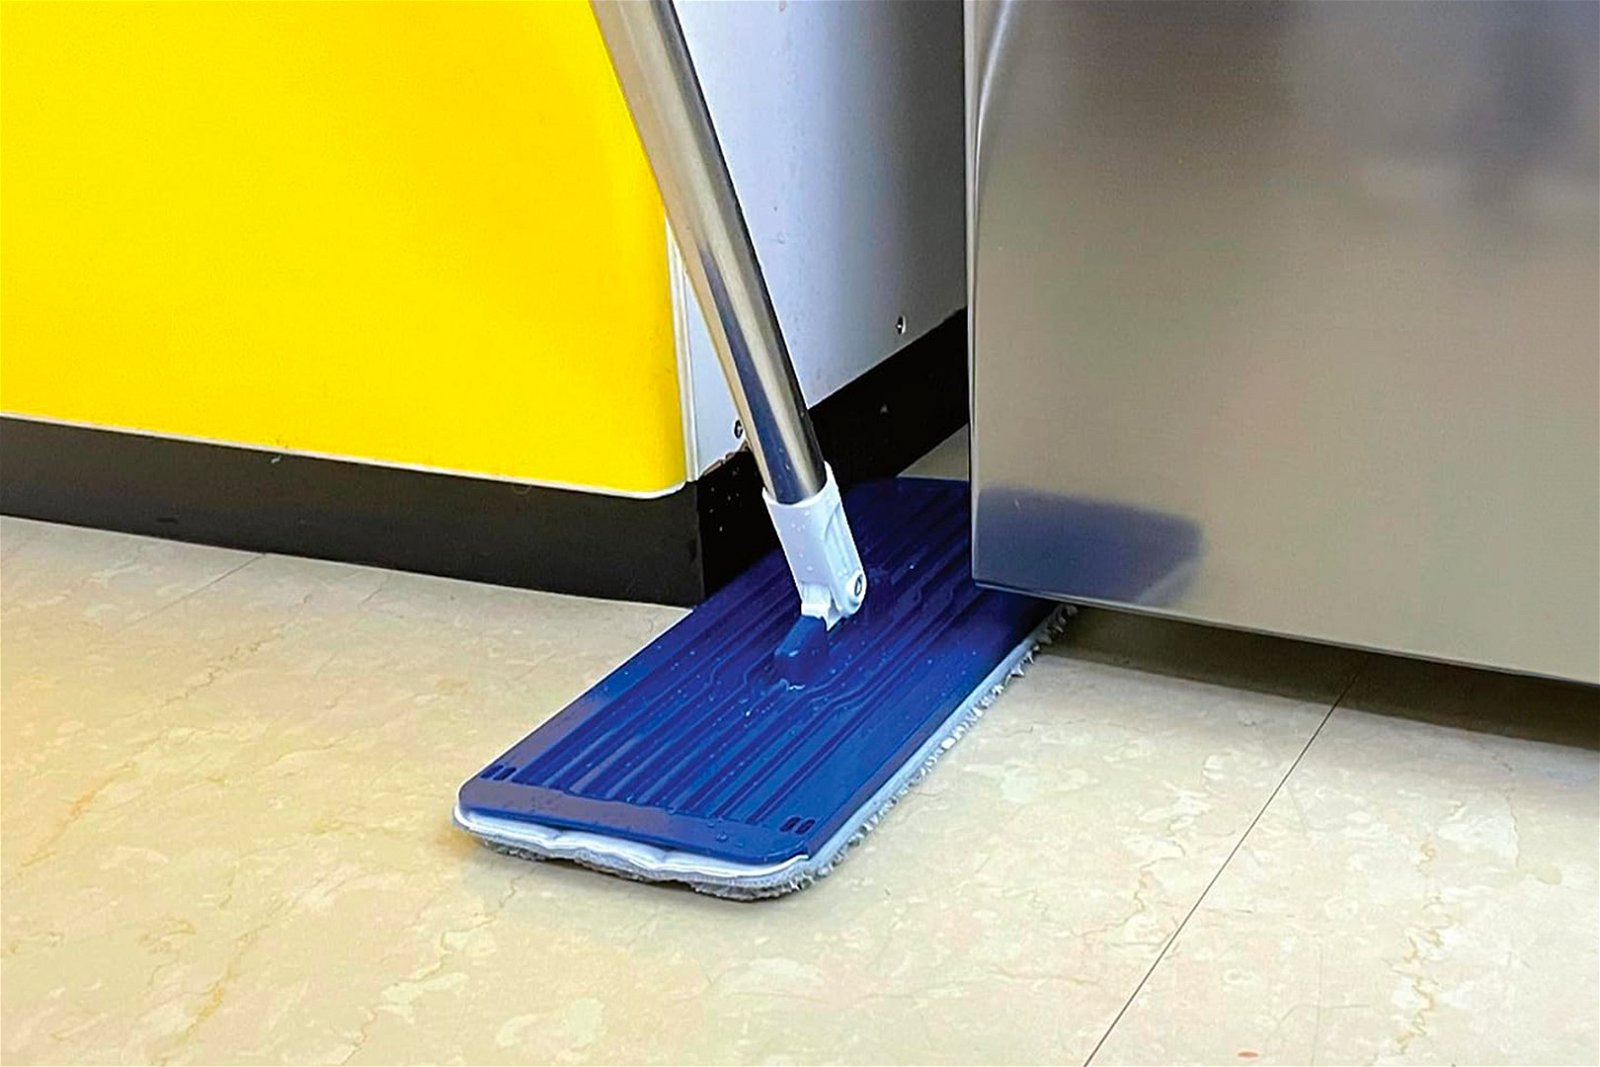 I migliori mop lavapavimenti per pulire con meno fatica